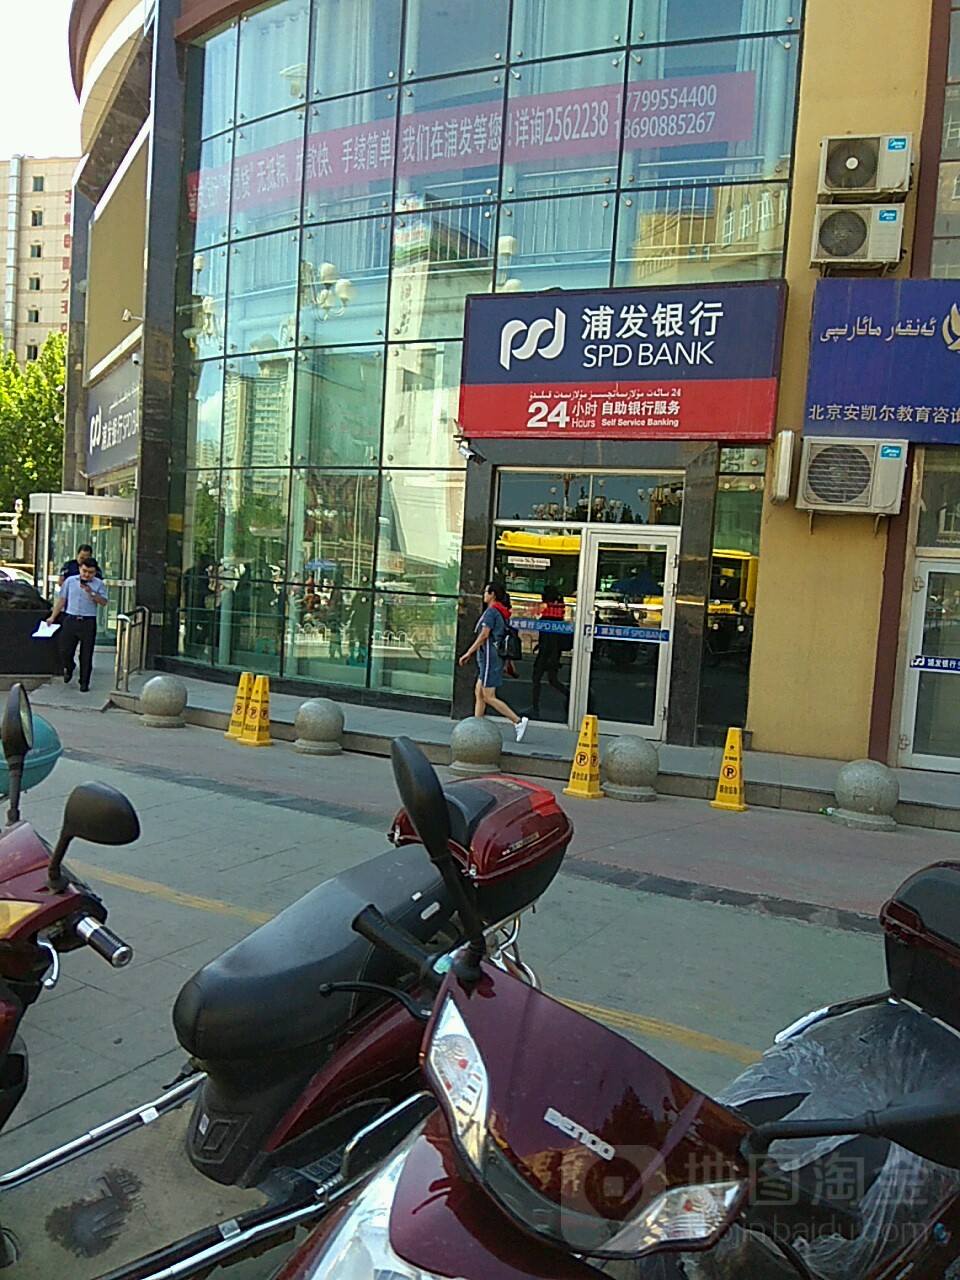 上海浦东发展银行行24小时自助银行(解放北路)